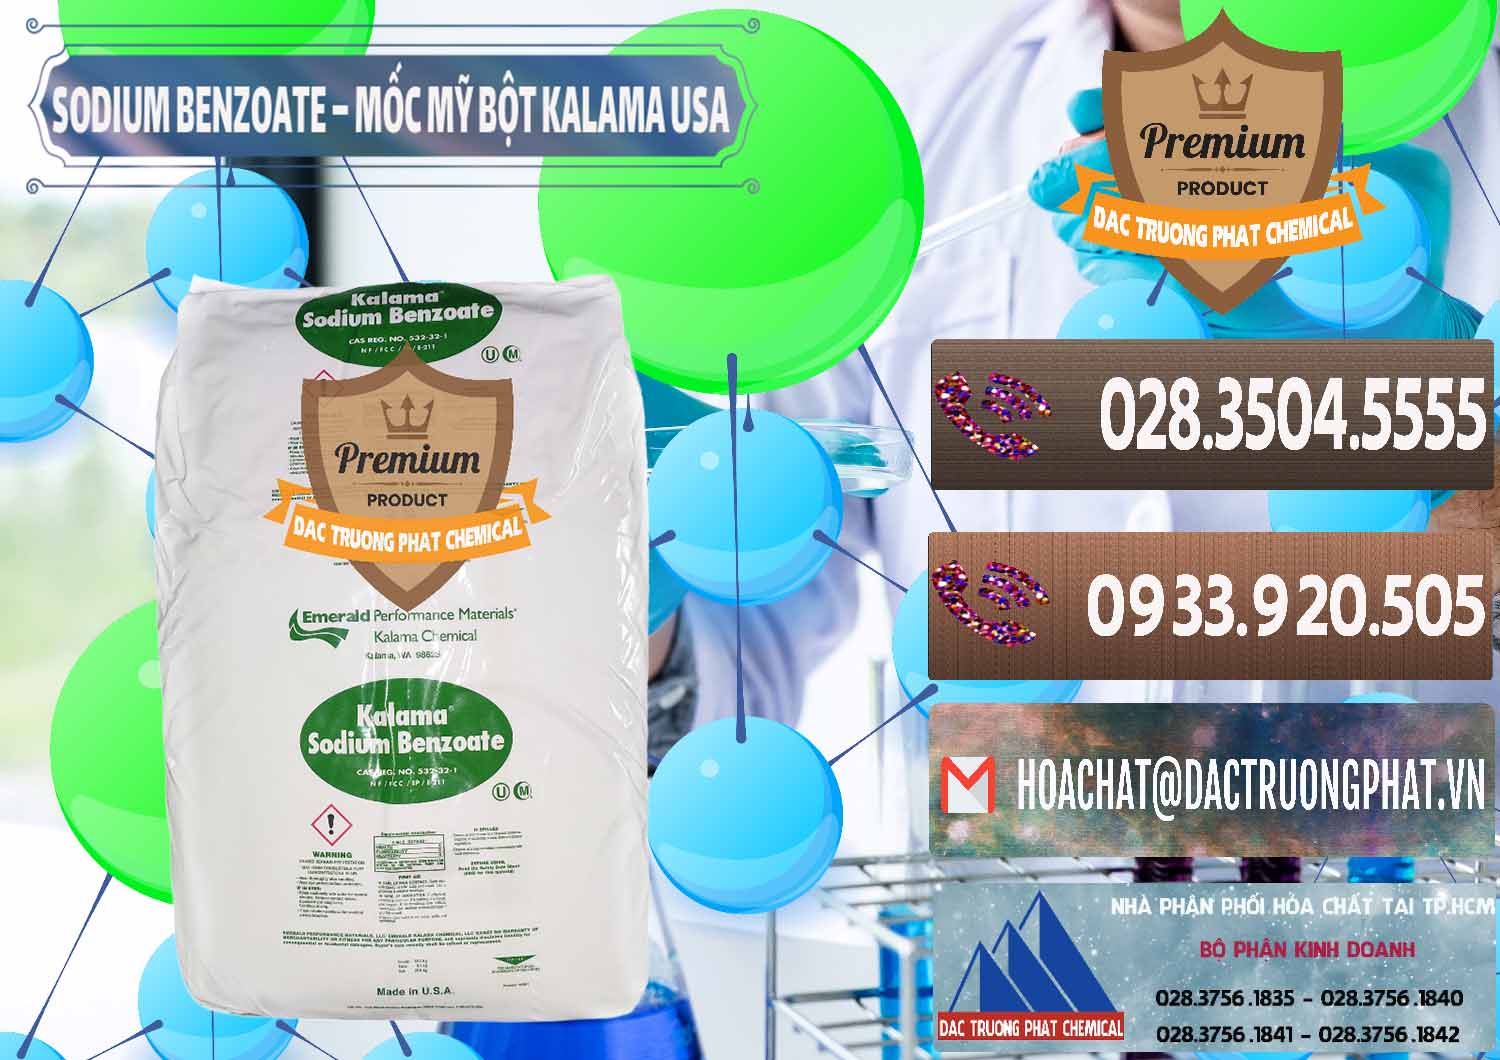 Công ty chuyên kinh doanh - bán Sodium Benzoate - Mốc Bột Kalama Food Grade Mỹ Usa - 0136 - Chuyên cung cấp _ bán hóa chất tại TP.HCM - hoachatviet.net